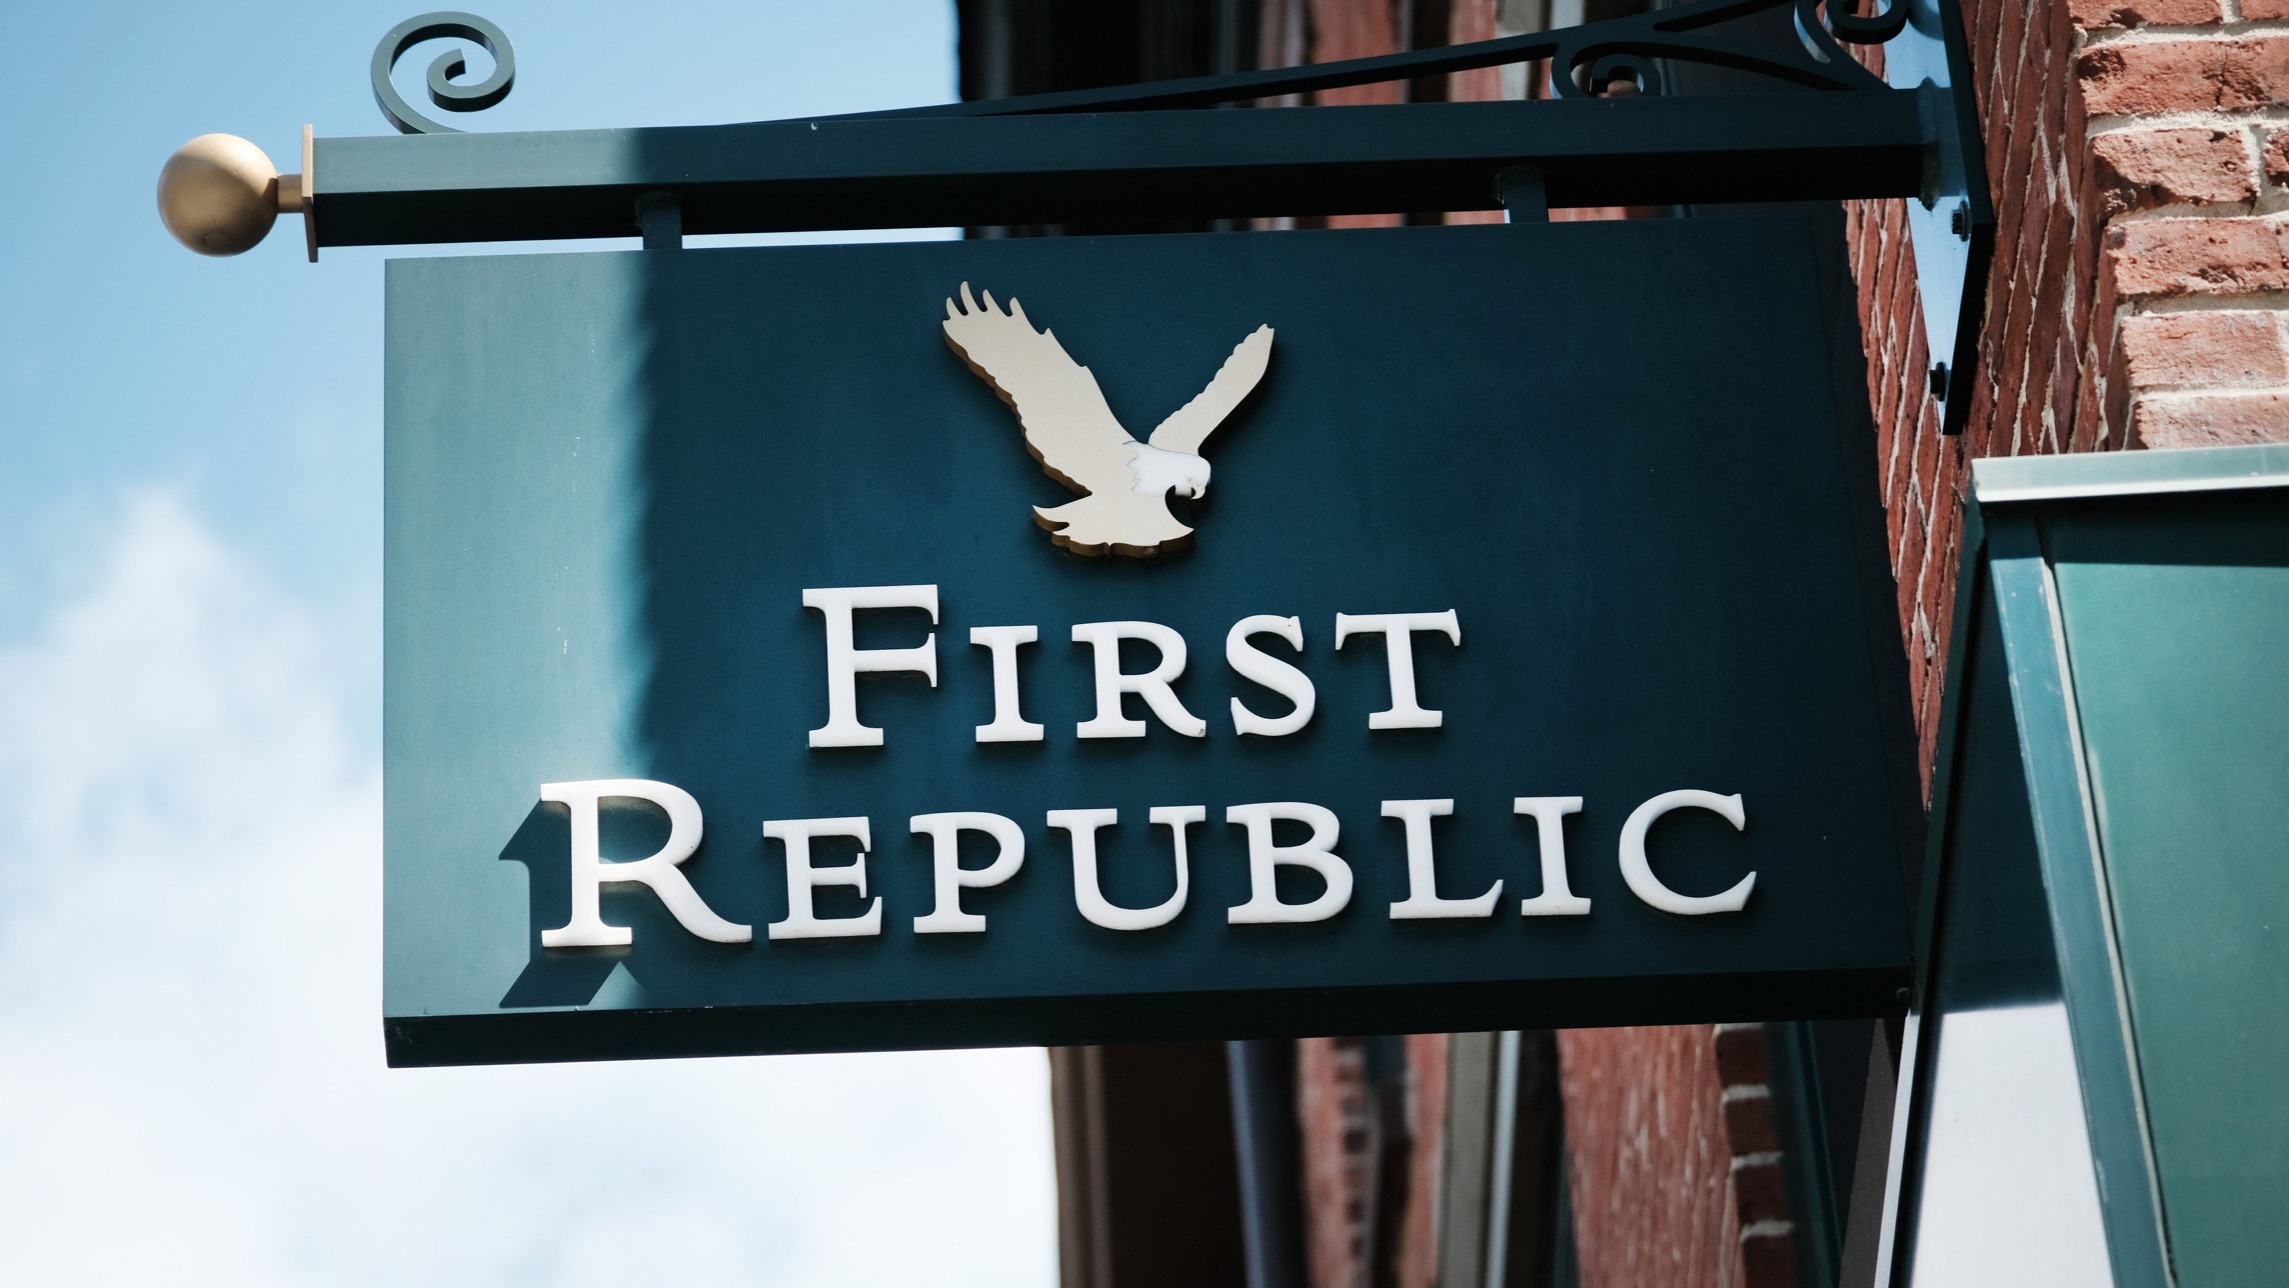 خسارة أول بنك شعبي First Republic حواليّ 100$ مليار في ثلاثة أشهر وانخفاض قيمة أسهمه بنسبة 50%